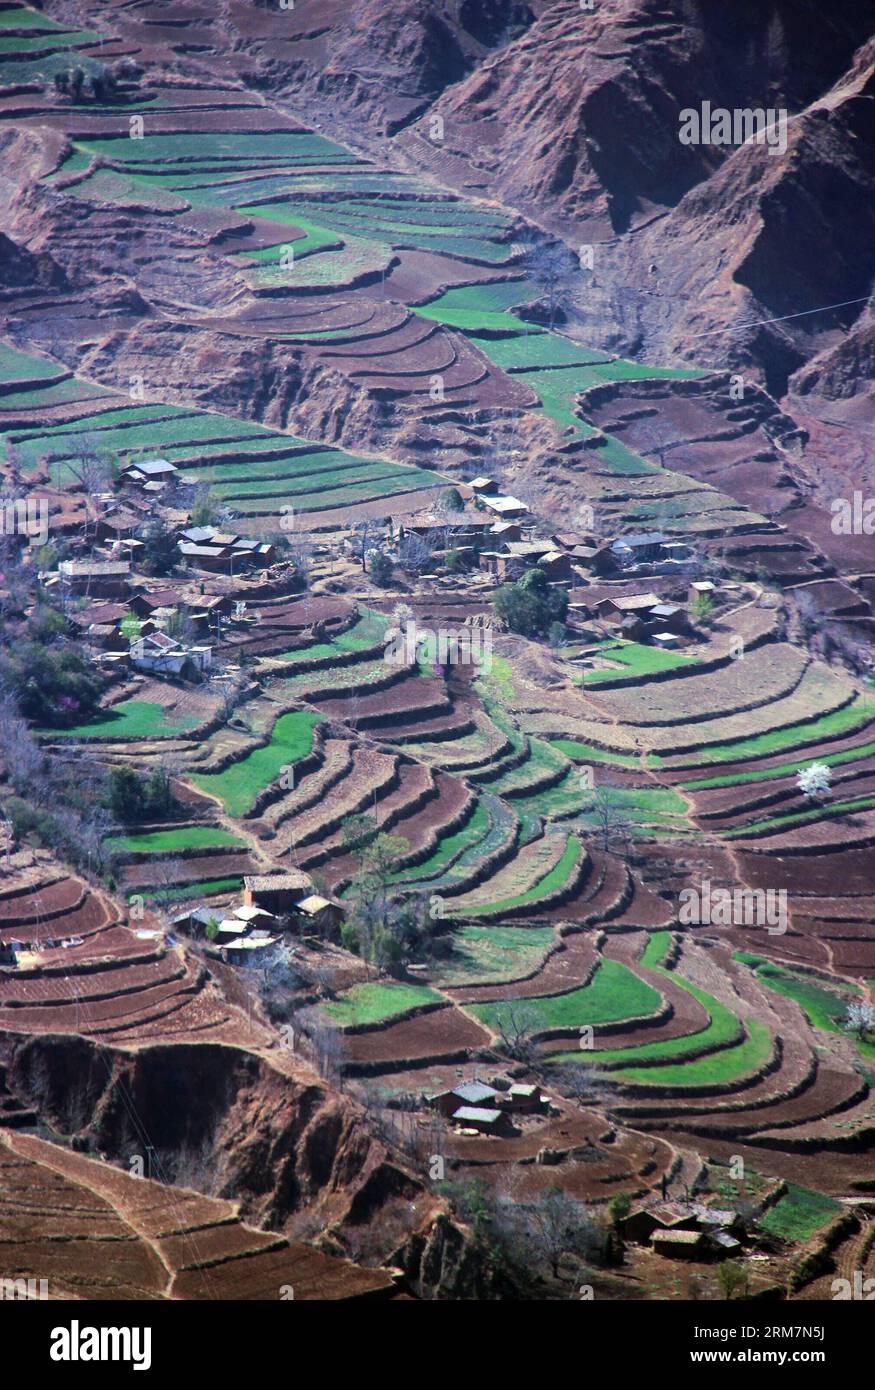 (140310) -- WEINING, 10. März 2014 (Xinhua) -- Foto aufgenommen am 9. März 2014 zeigt die Feldlandschaft in der Gemeinde Haila des autonomen Komitats Weining Yi, Provinz Guizhou im Südwesten Chinas. (Xinhua/He Huan) (lfj) CHINA-GUIZHOU-WEINING-LANDSCHAFT (CN) PUBLICATIONxNOTxINxCHN Weining März 10 2014 XINHUA Foto aufgenommen AM 9. März 2014 zeigt die Feldlandschaft in der Gemeinde Weining Yi Autonomous County Südwest China S Guizhou Provinz XINHUA HE Huan China GuiNOzhou Weining Landschaft PUxBLN Stockfoto